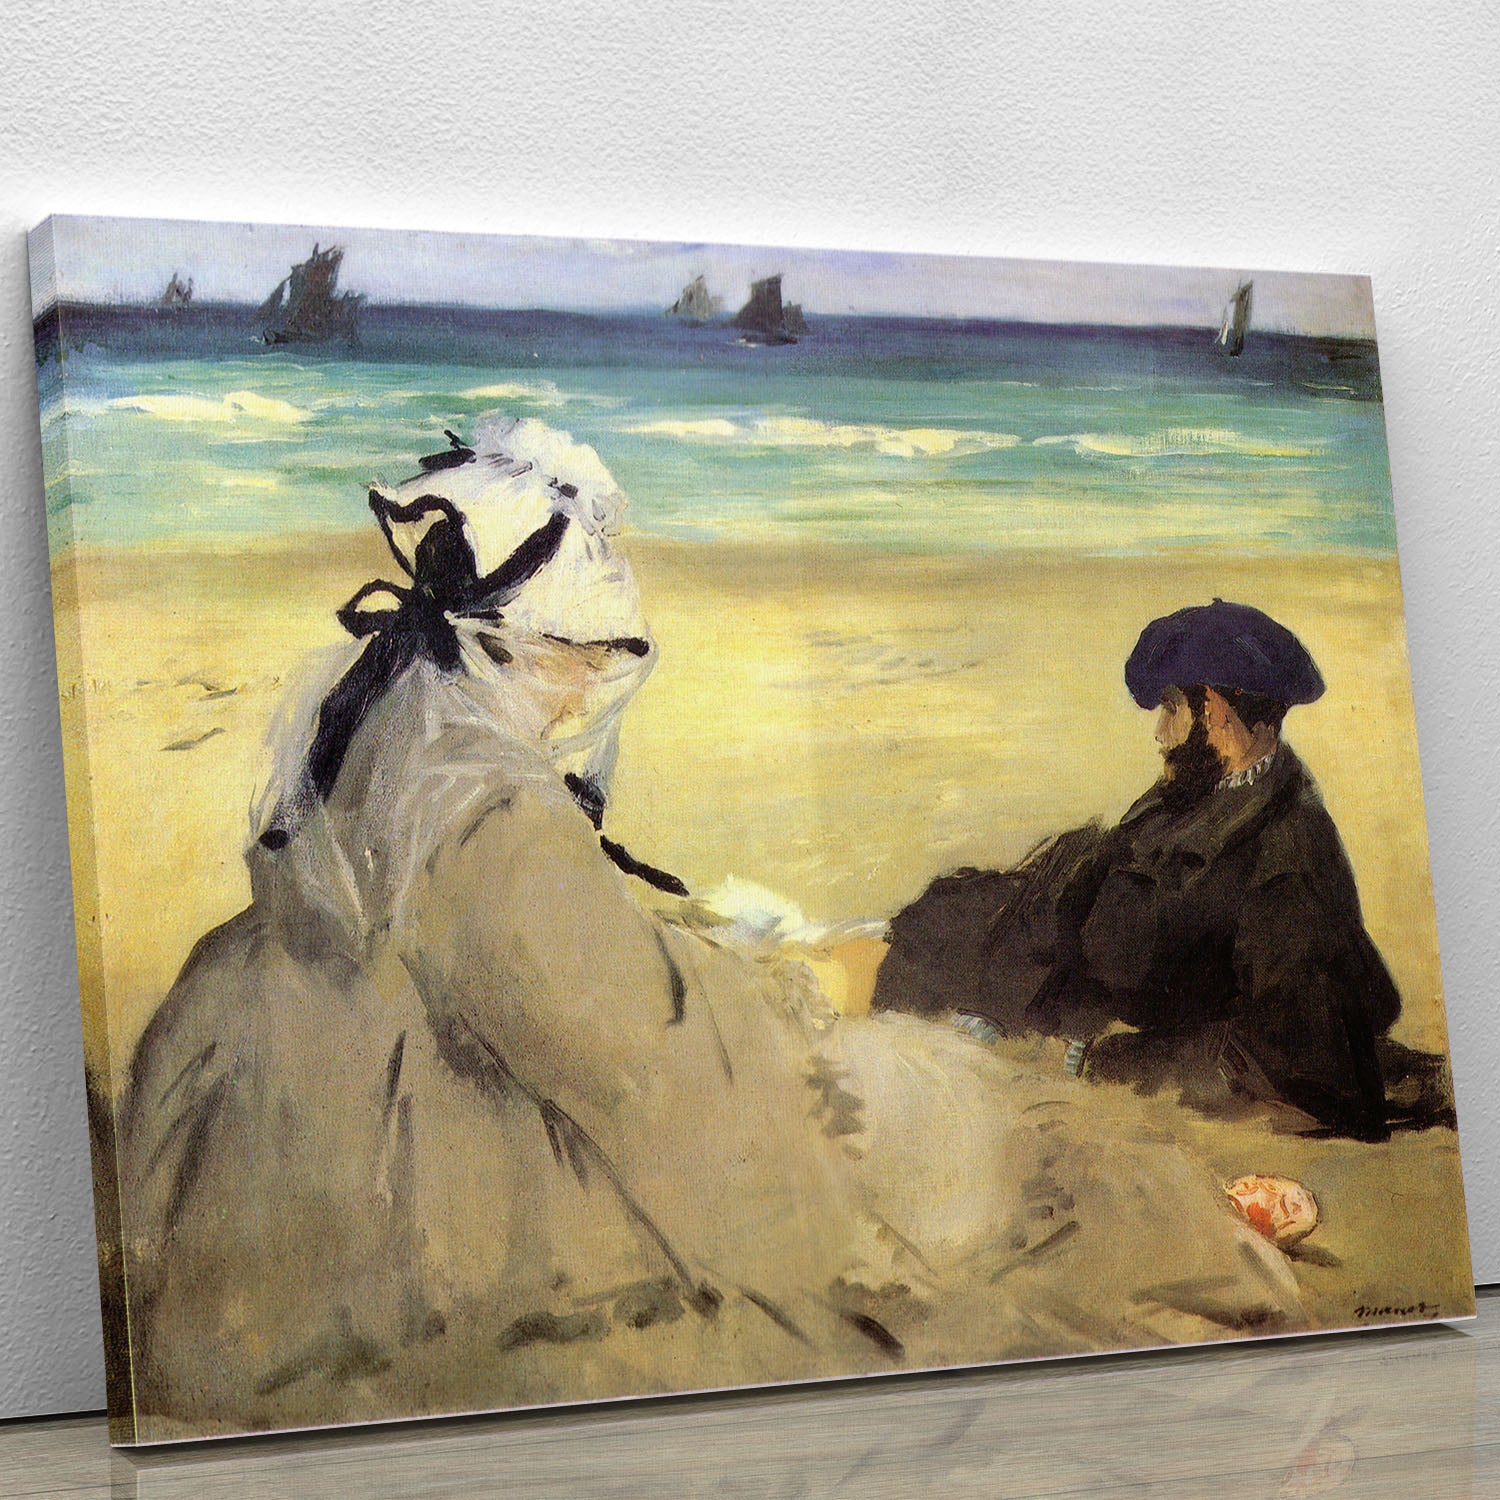 Sur la plage 1873 by Manet Canvas Print or Poster - Canvas Art Rocks - 1